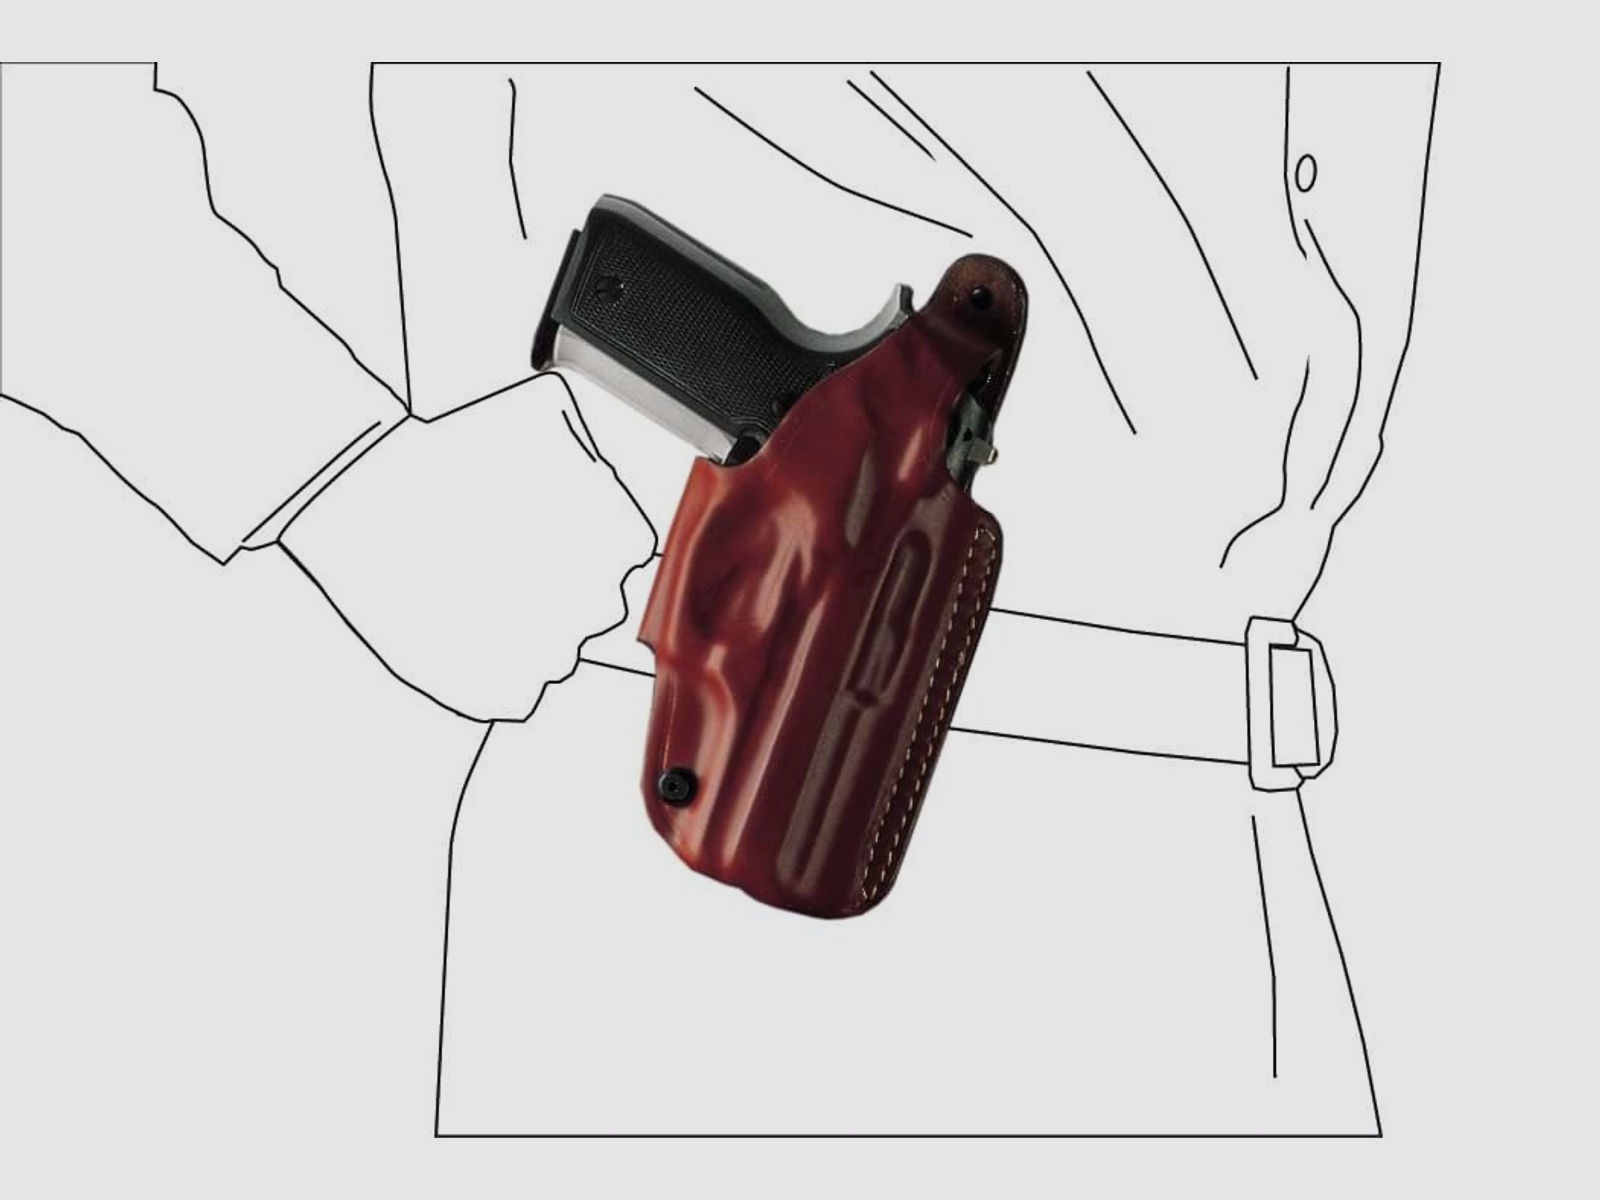 Schnellziehholster mit drei Tragepositionen Glock 20/21, H&K USP, P30L, SFP9-VP9, CZ P07-Schwarz-Rechtshänder